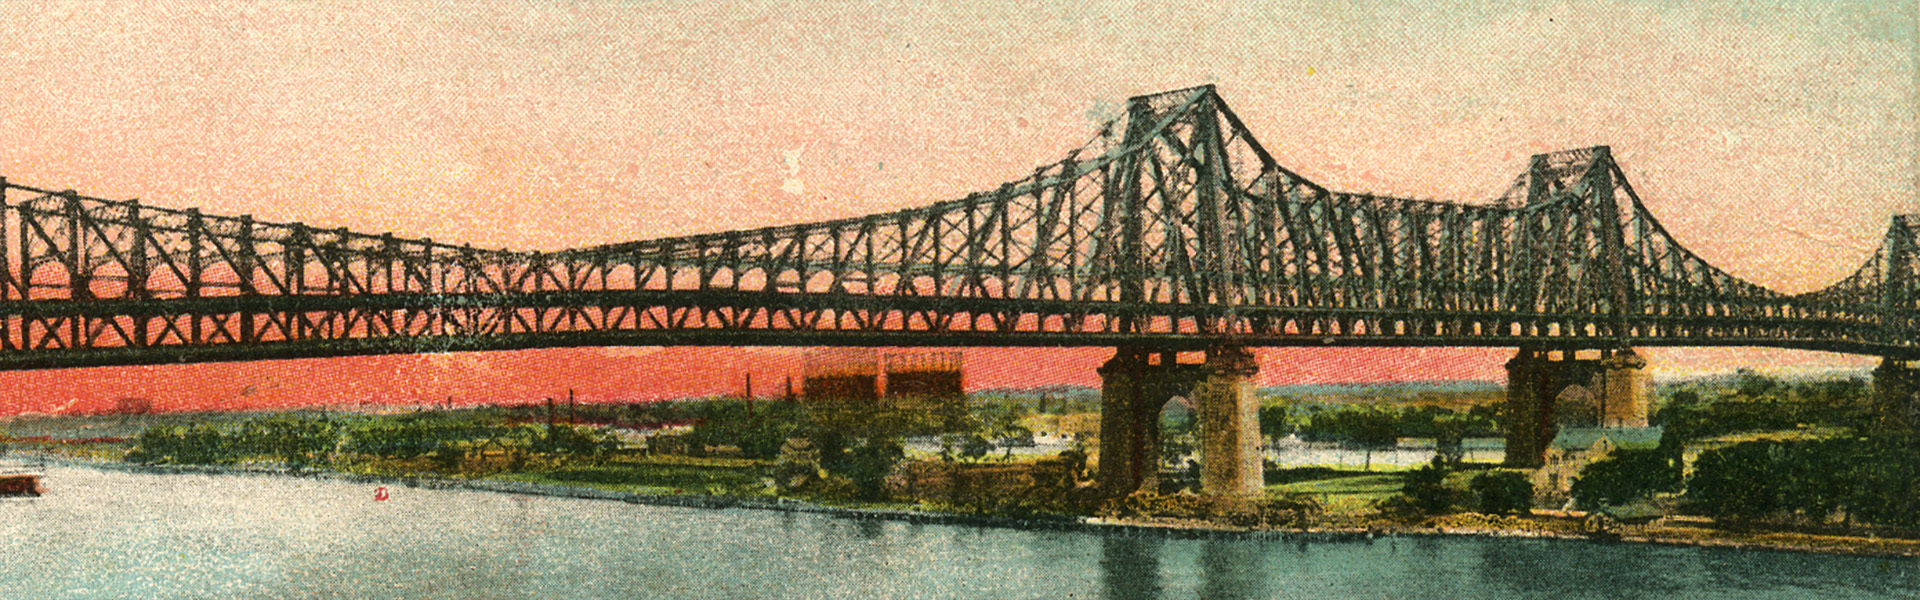 Queensboro Bridge, 1900s